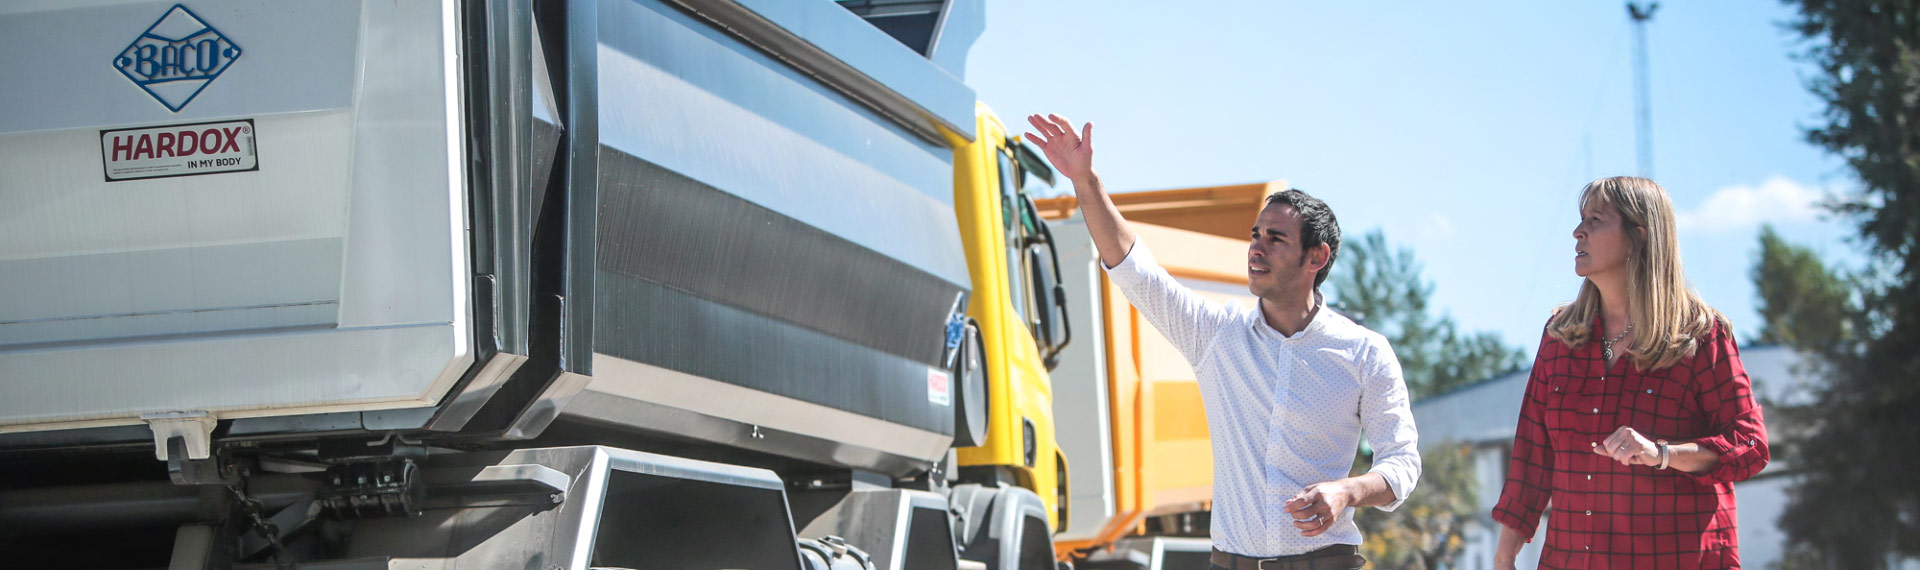 Industrias Baco의 직원들은 Hardox 500 Tuf 강재로 제작된 덤프 트럭에 매우 만족합니다.